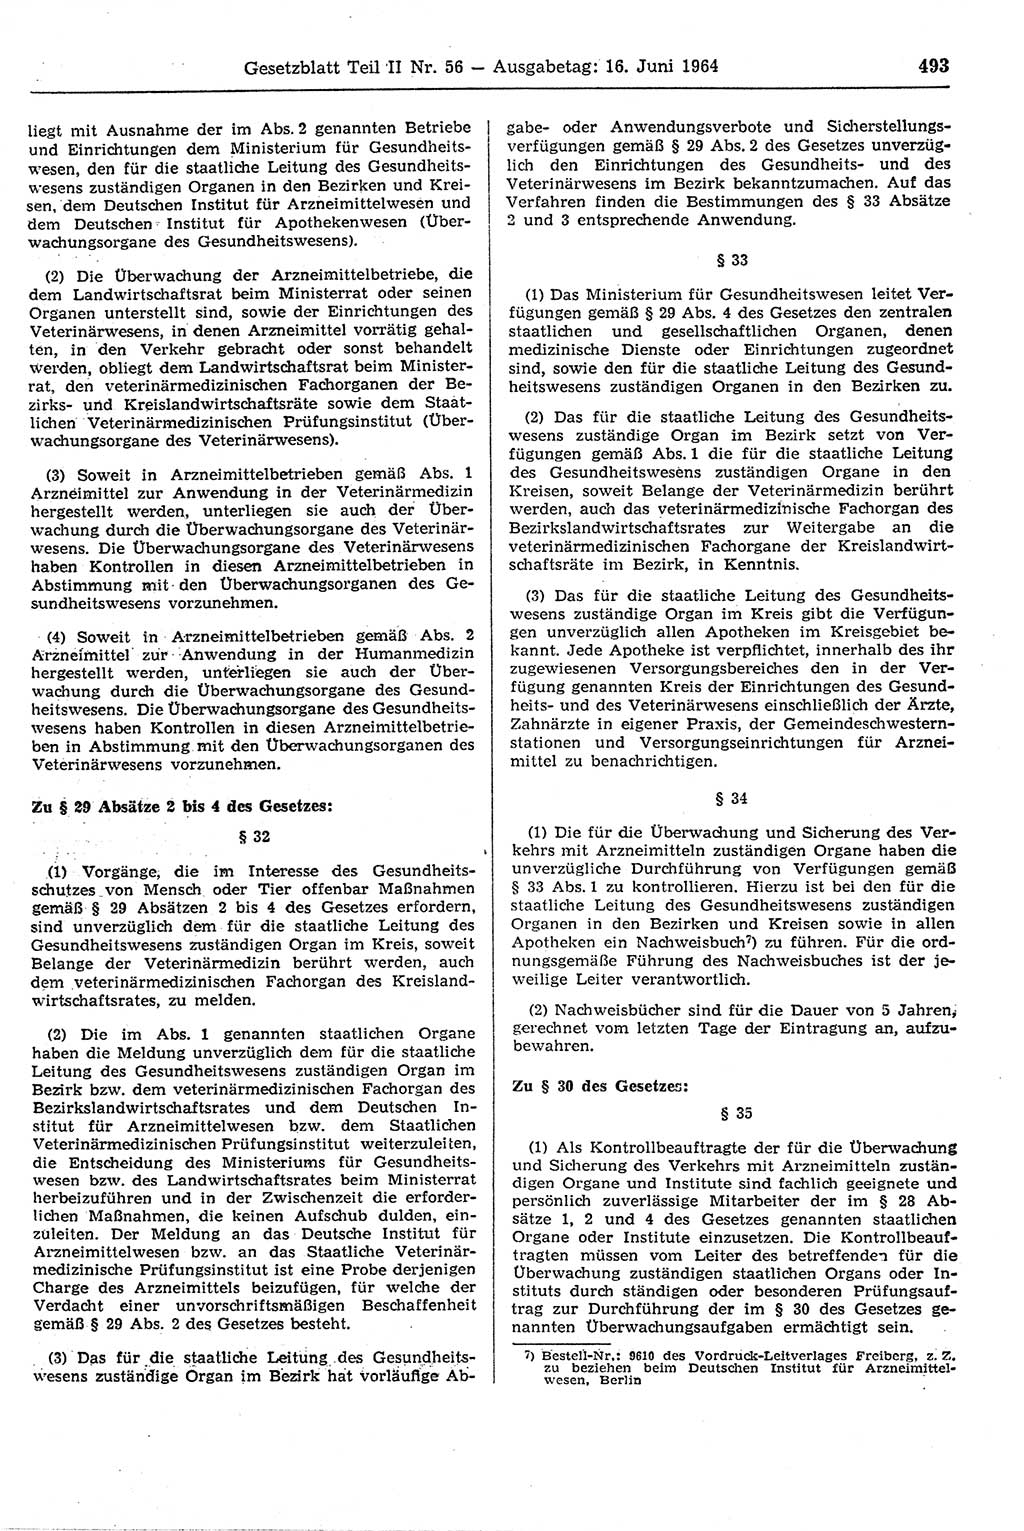 Gesetzblatt (GBl.) der Deutschen Demokratischen Republik (DDR) Teil ⅠⅠ 1964, Seite 493 (GBl. DDR ⅠⅠ 1964, S. 493)